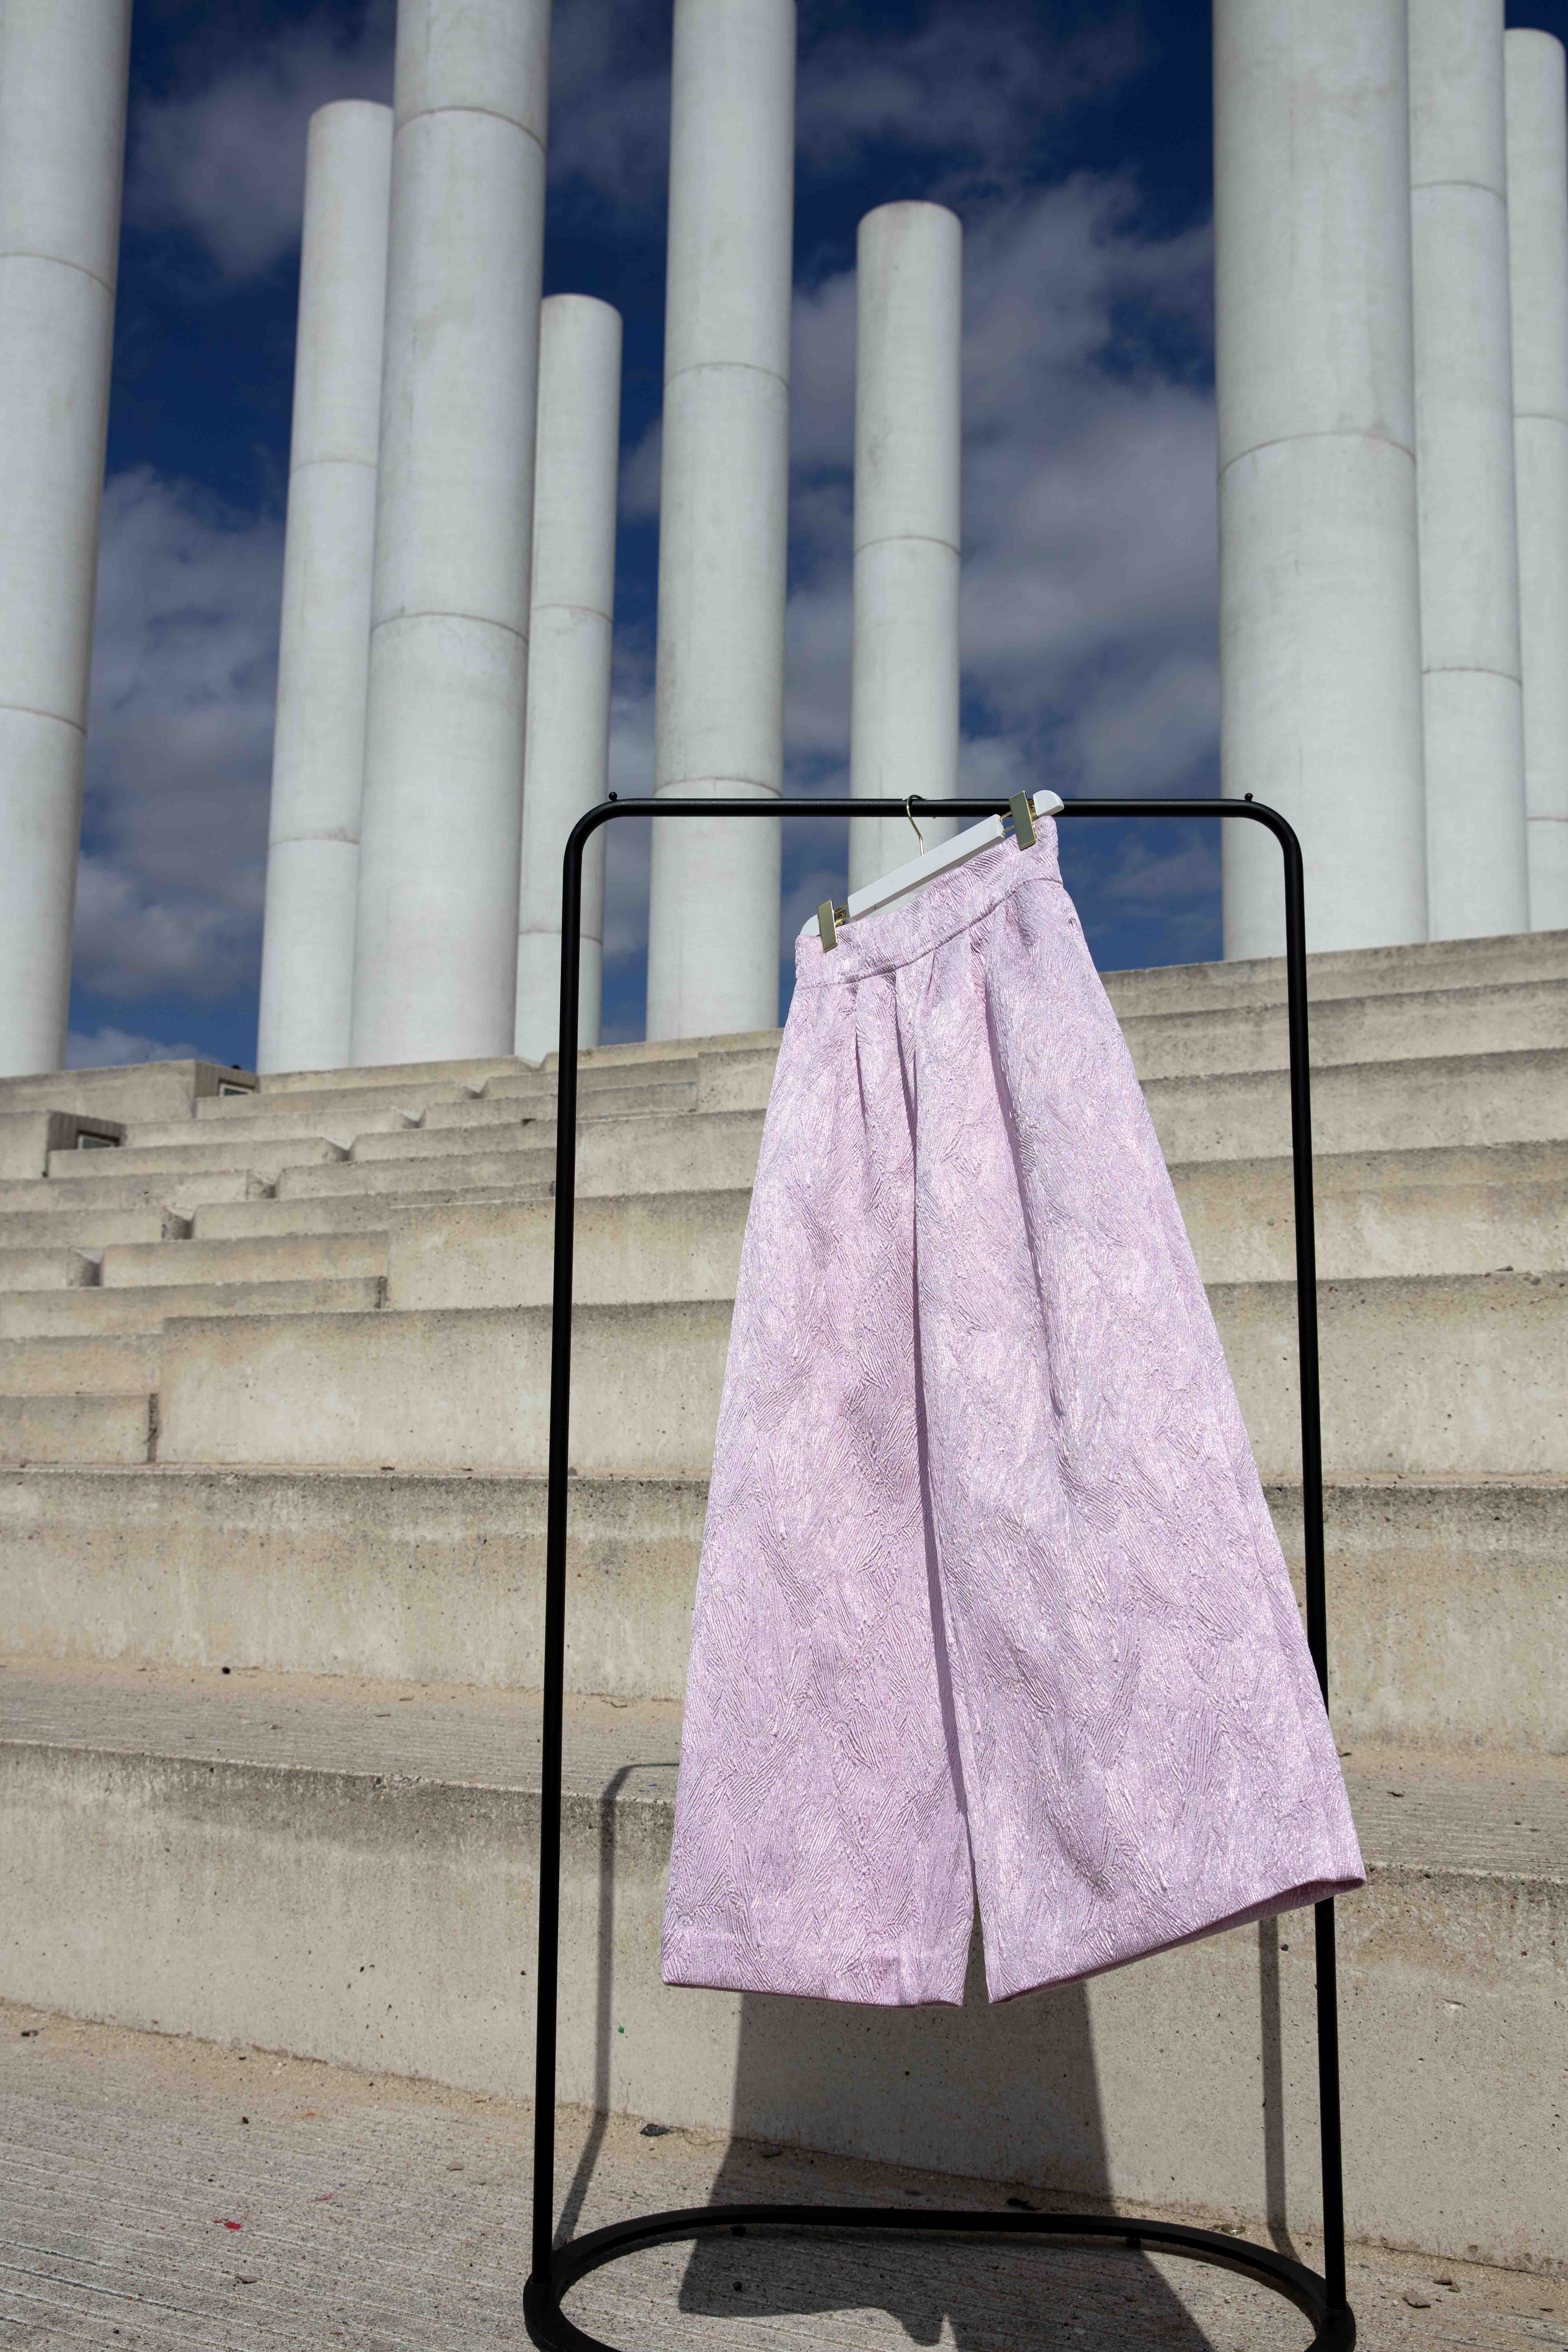 Retrouvez notre pantalon rose en jacquard, Albane. Cette création a été imaginé et conçu par les deux designers Michele Emanuele et Veronica Marucci au sein de leur atelier parisien.